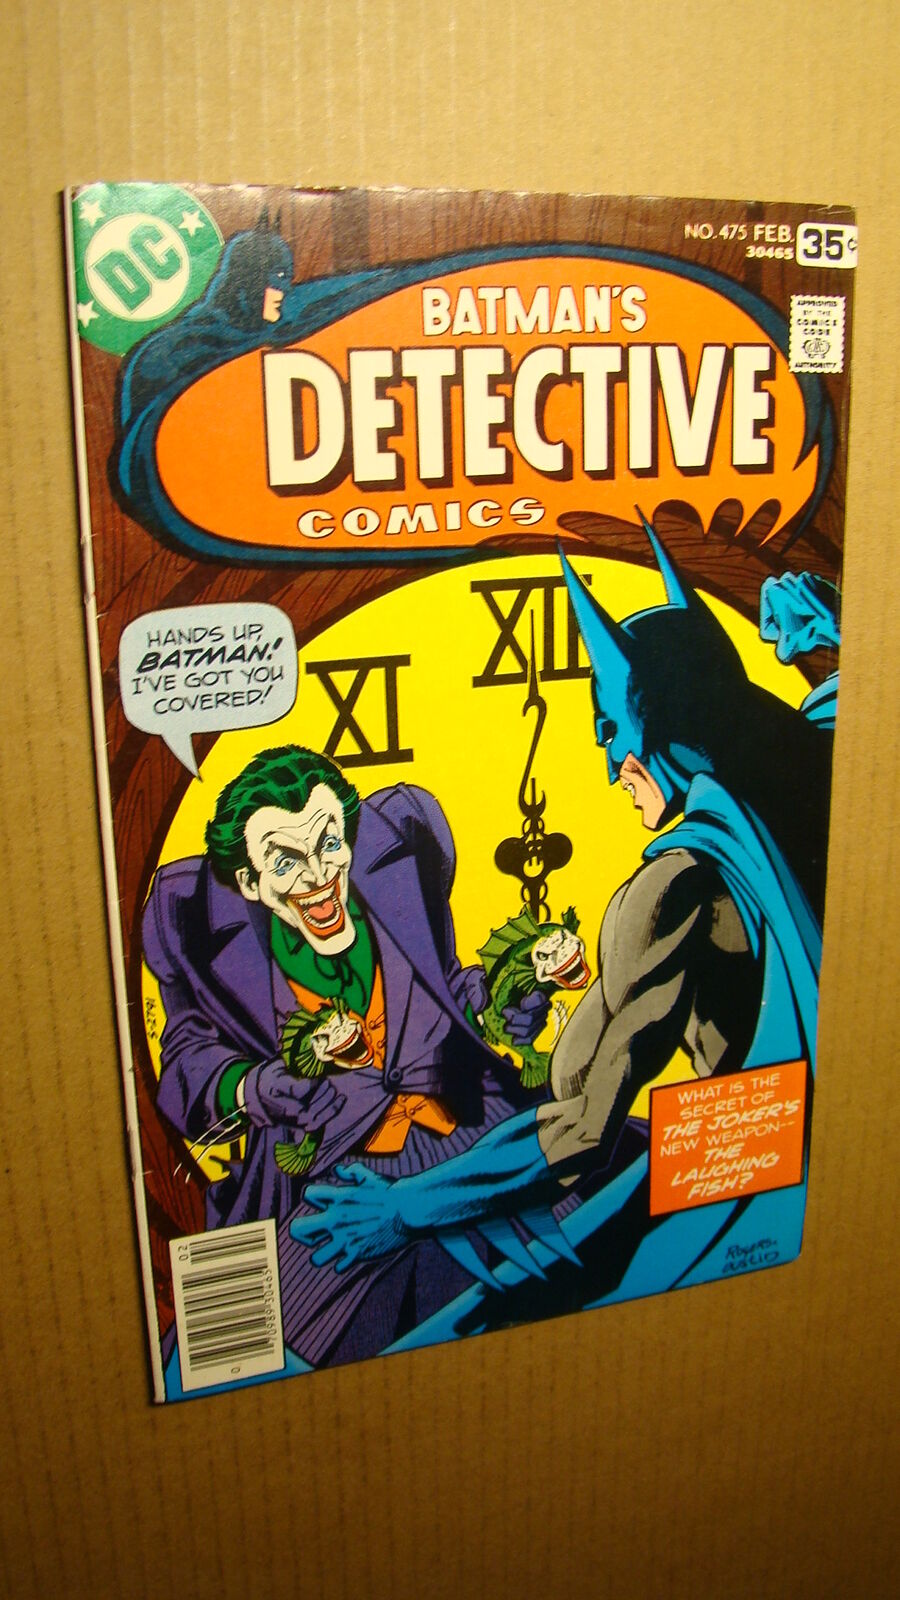 DETECTIVE COMICS BATMAN 475 *IN GRADE* CLASSIC JOKER FISH COVER DC BOOK JS65